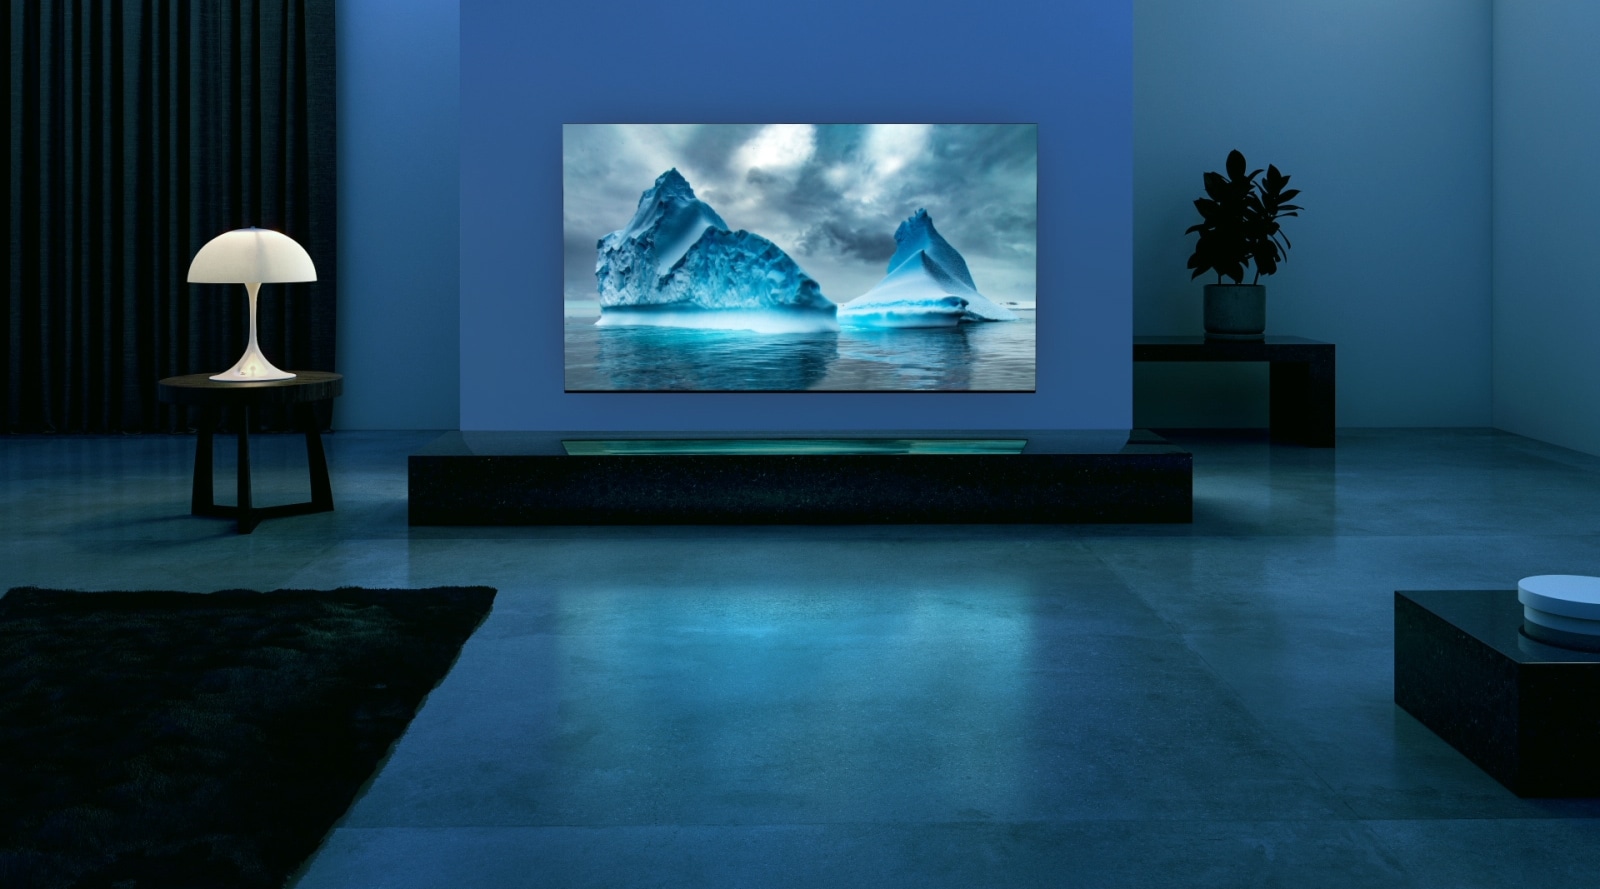 Kék neonfény mozog egy kék gleccser képe körül. A kamera eltávolodik, és láthatóvá válik, hogy a kék gleccser a TV képernyőjén van. A TV egy tágas nappaliban látható kék háttérrel. 